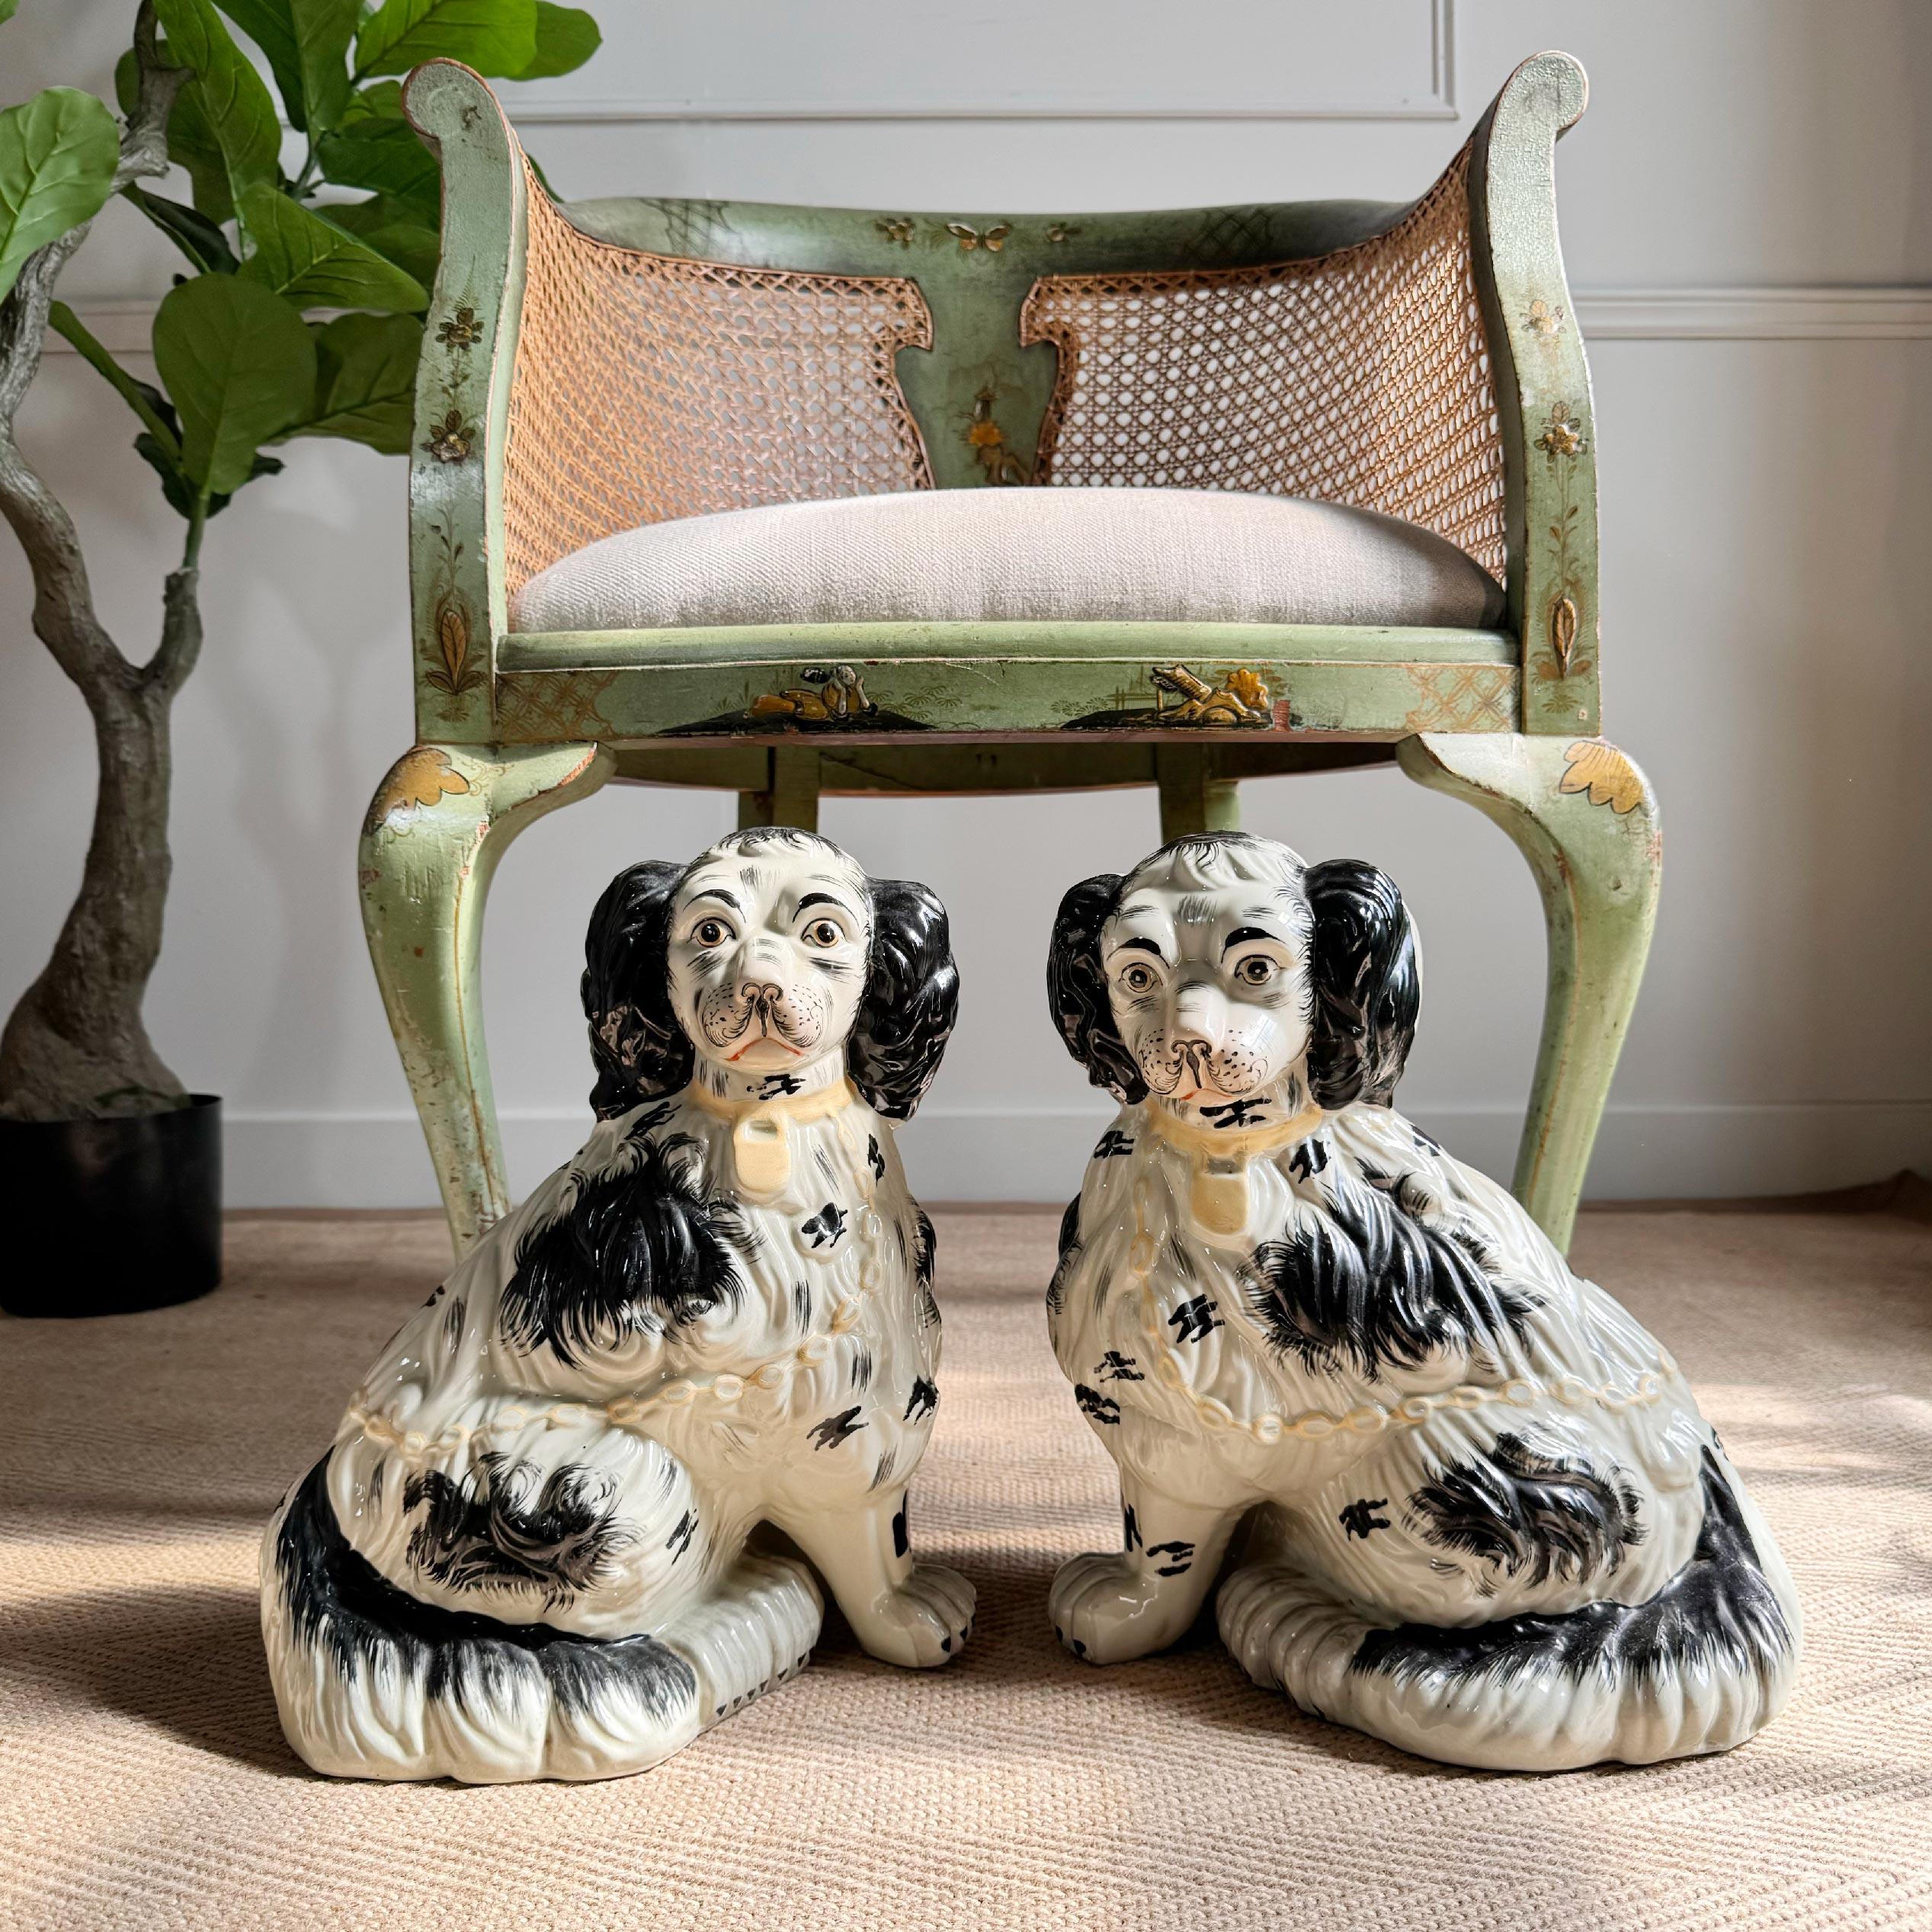  Paire de grands chiens du Staffordshire assis, vers 1860, au pelage texturé et très bien peints, dont les visages ressemblent à celui du moustachu Kind Charles II.



Ils sont de grande qualité et finement décorés.



L'inspiration originelle des